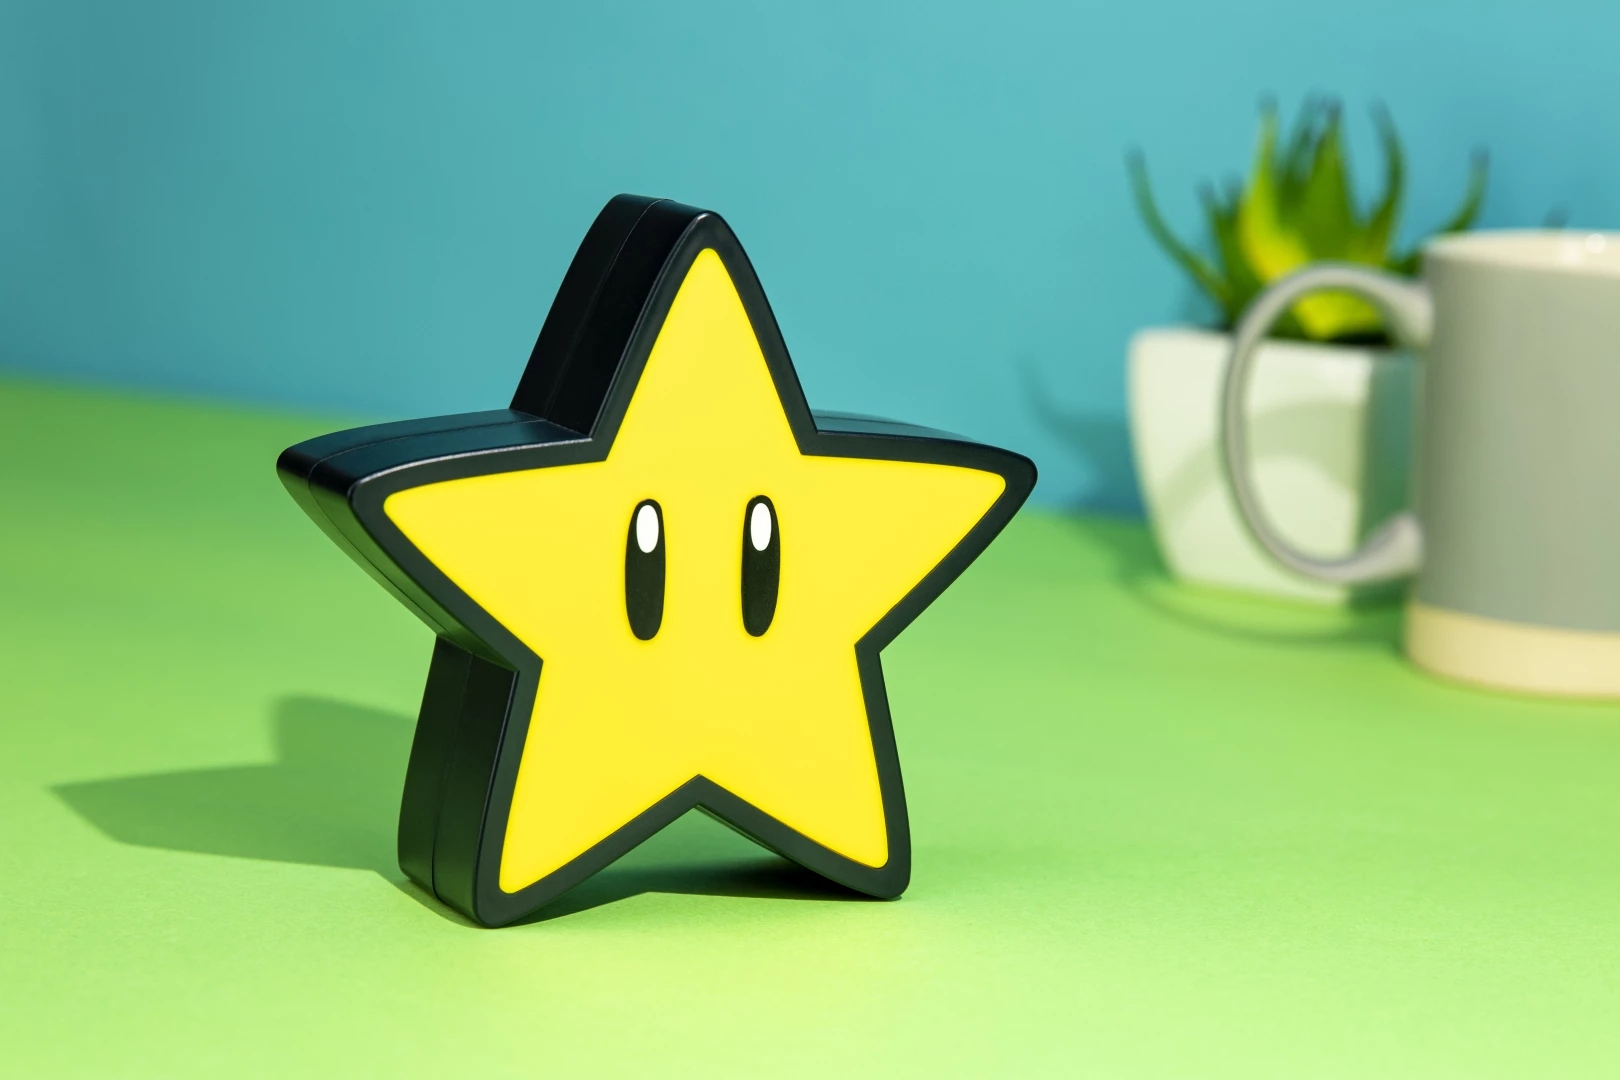 Super Mario - Super Star Light with Sound voor de Merchandise kopen op nedgame.nl